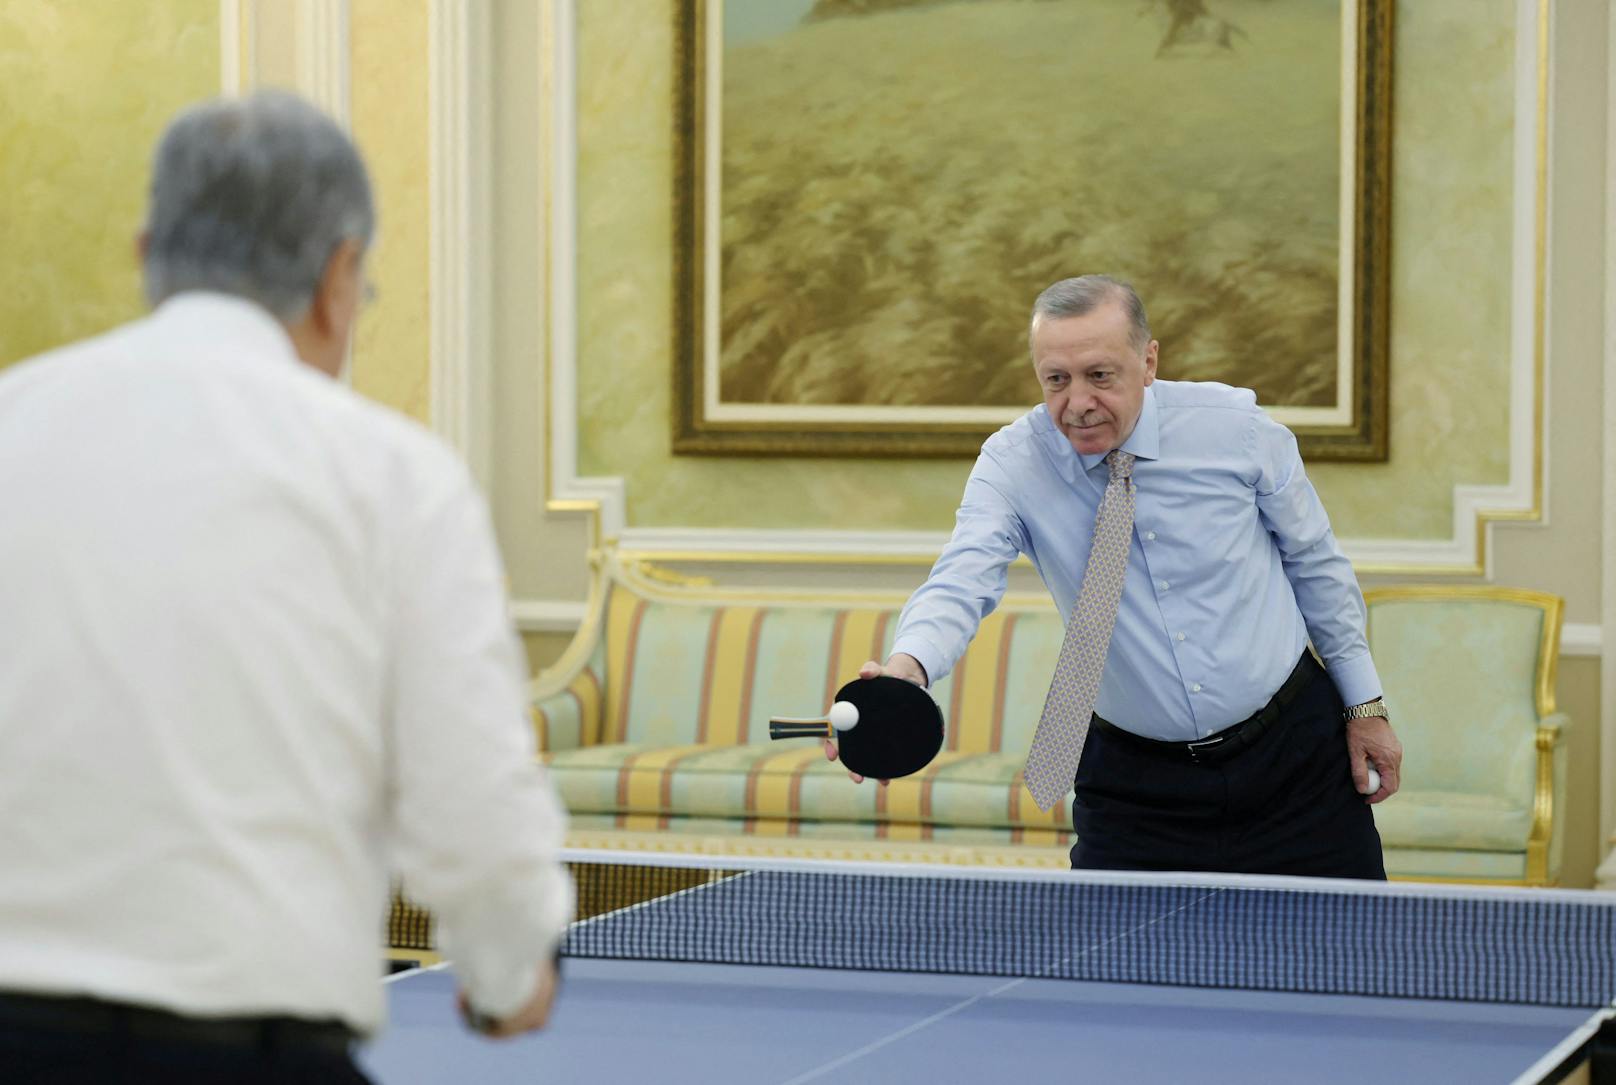 Schläger verkehrt– so kurios spielt Erdogan Tischtennis